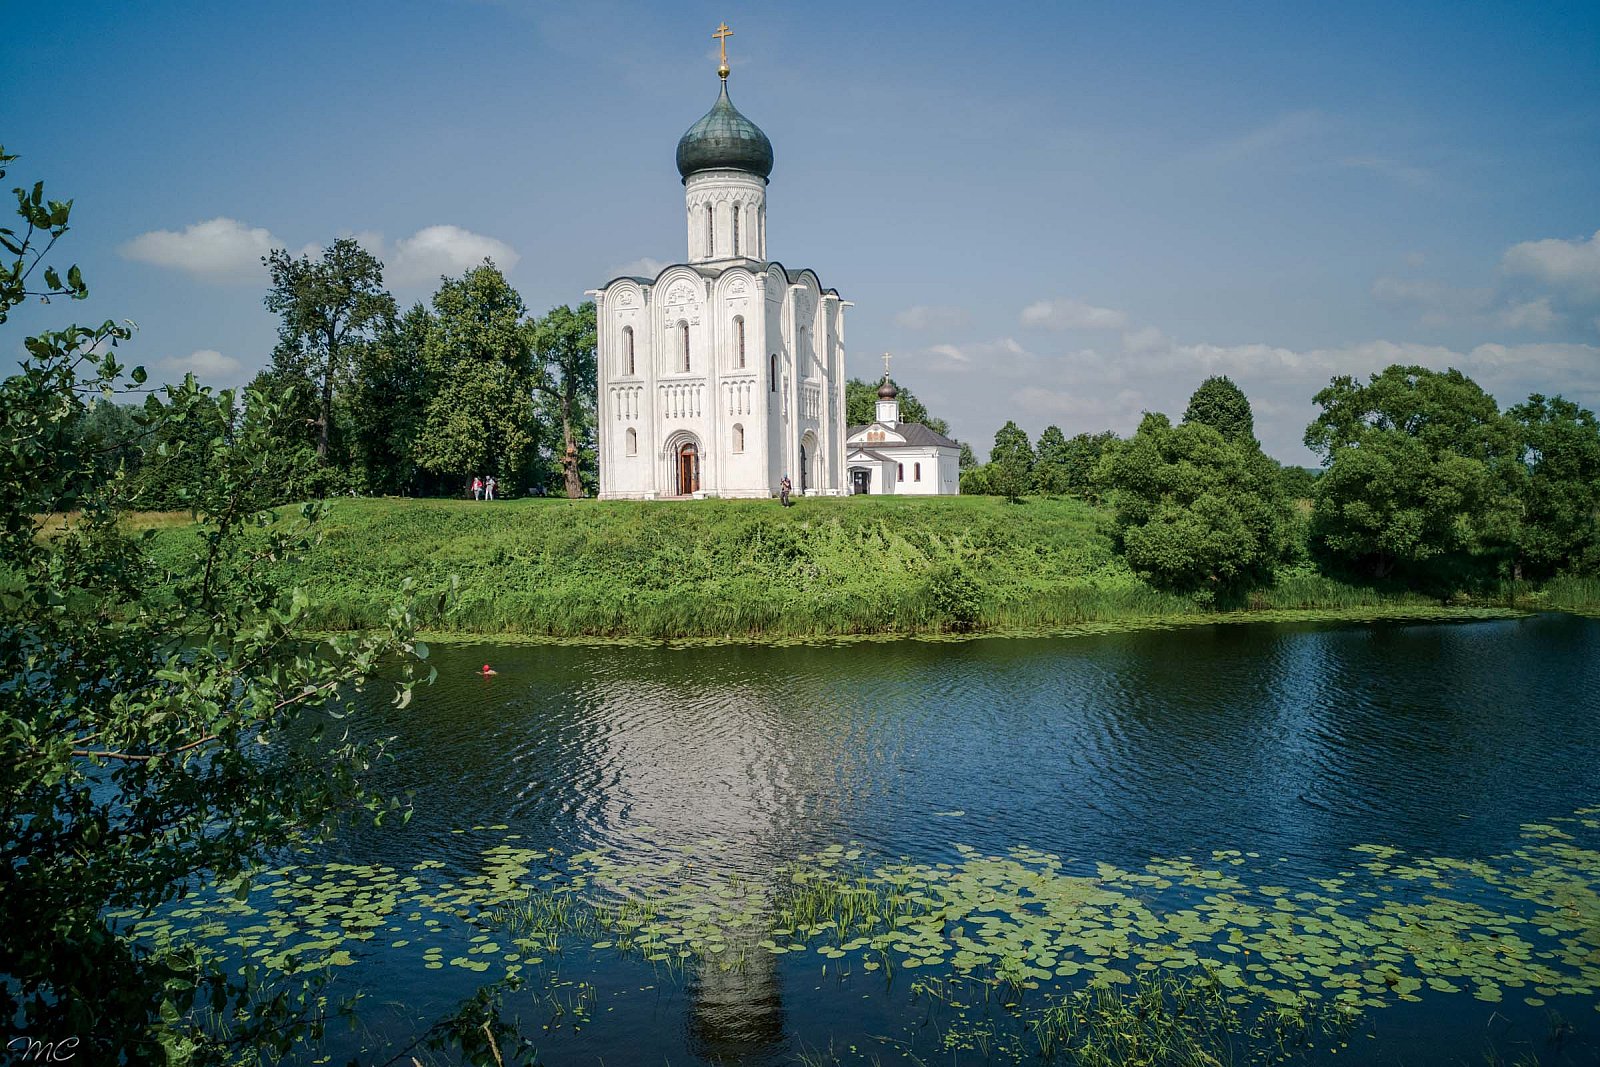 Церковь Покрова на Нерли - Владимирская область